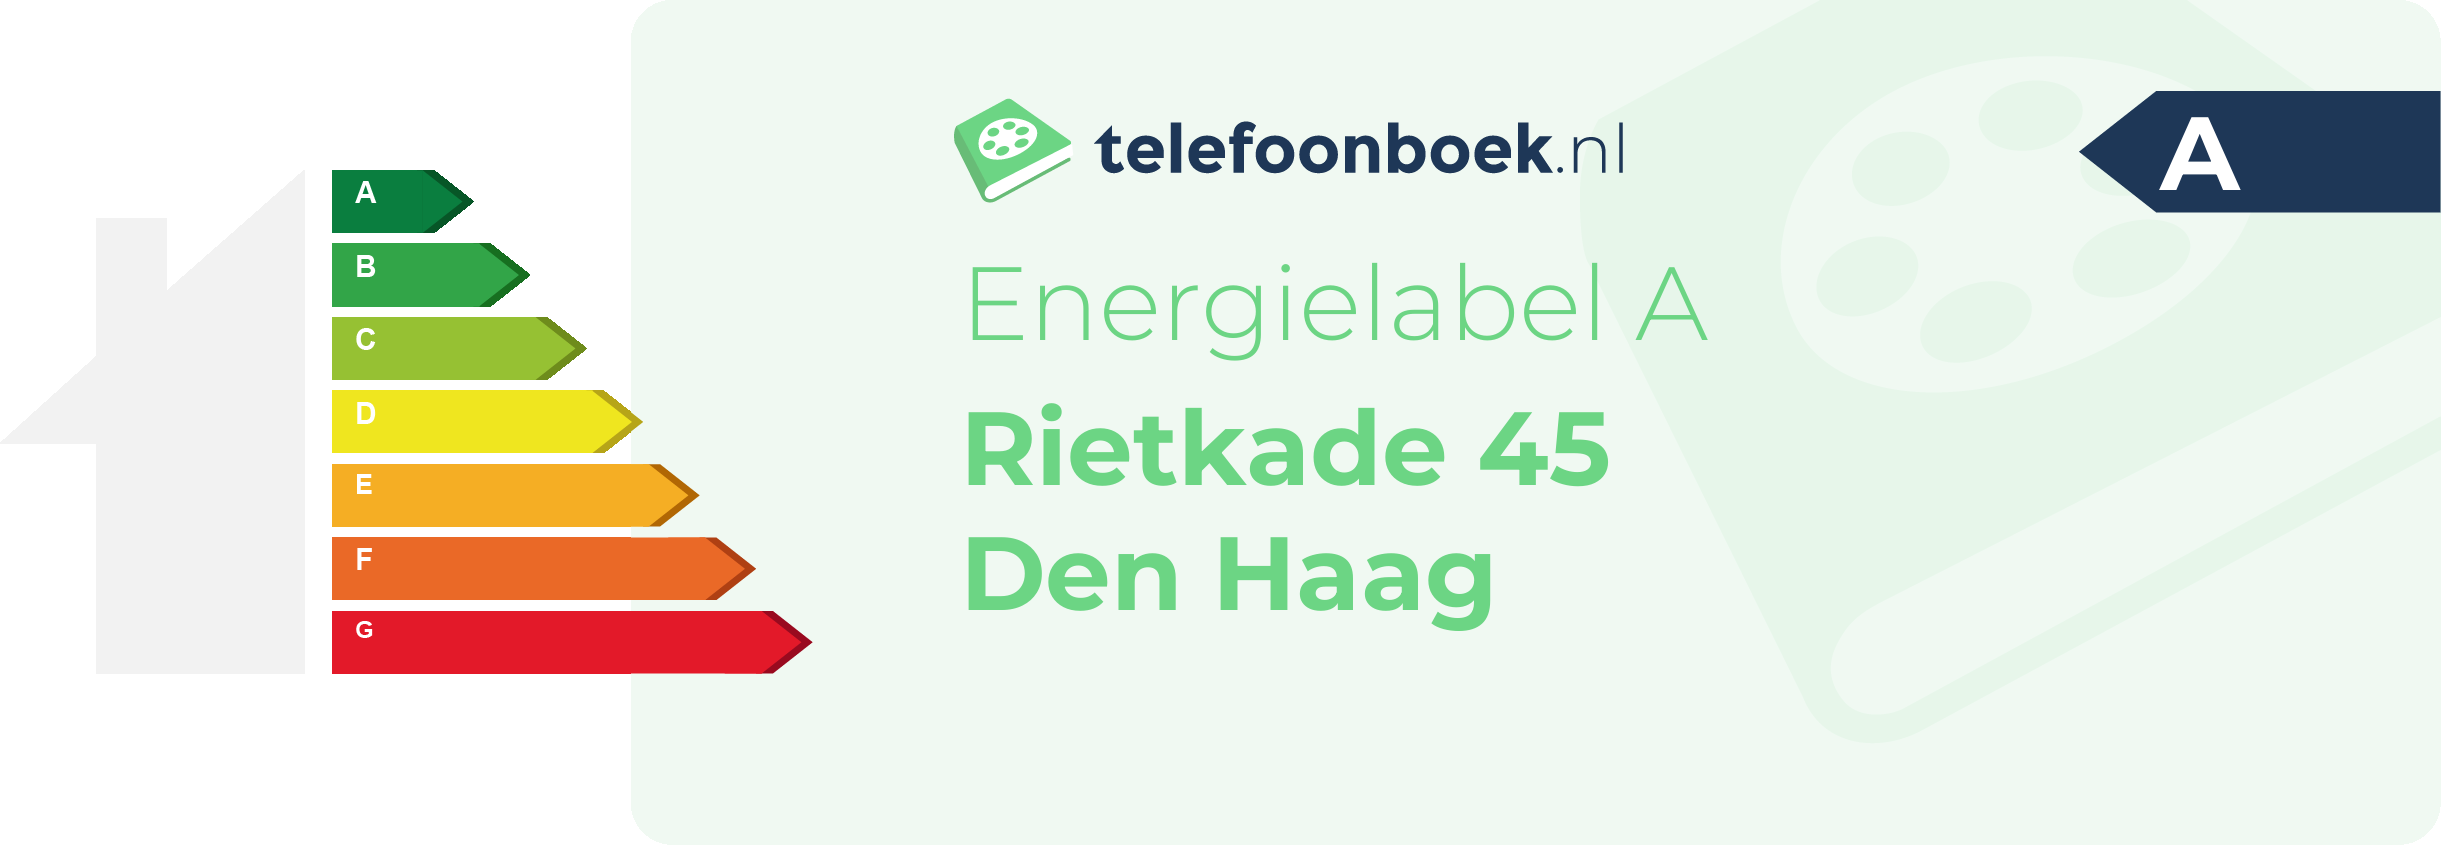 Energielabel Rietkade 45 Den Haag